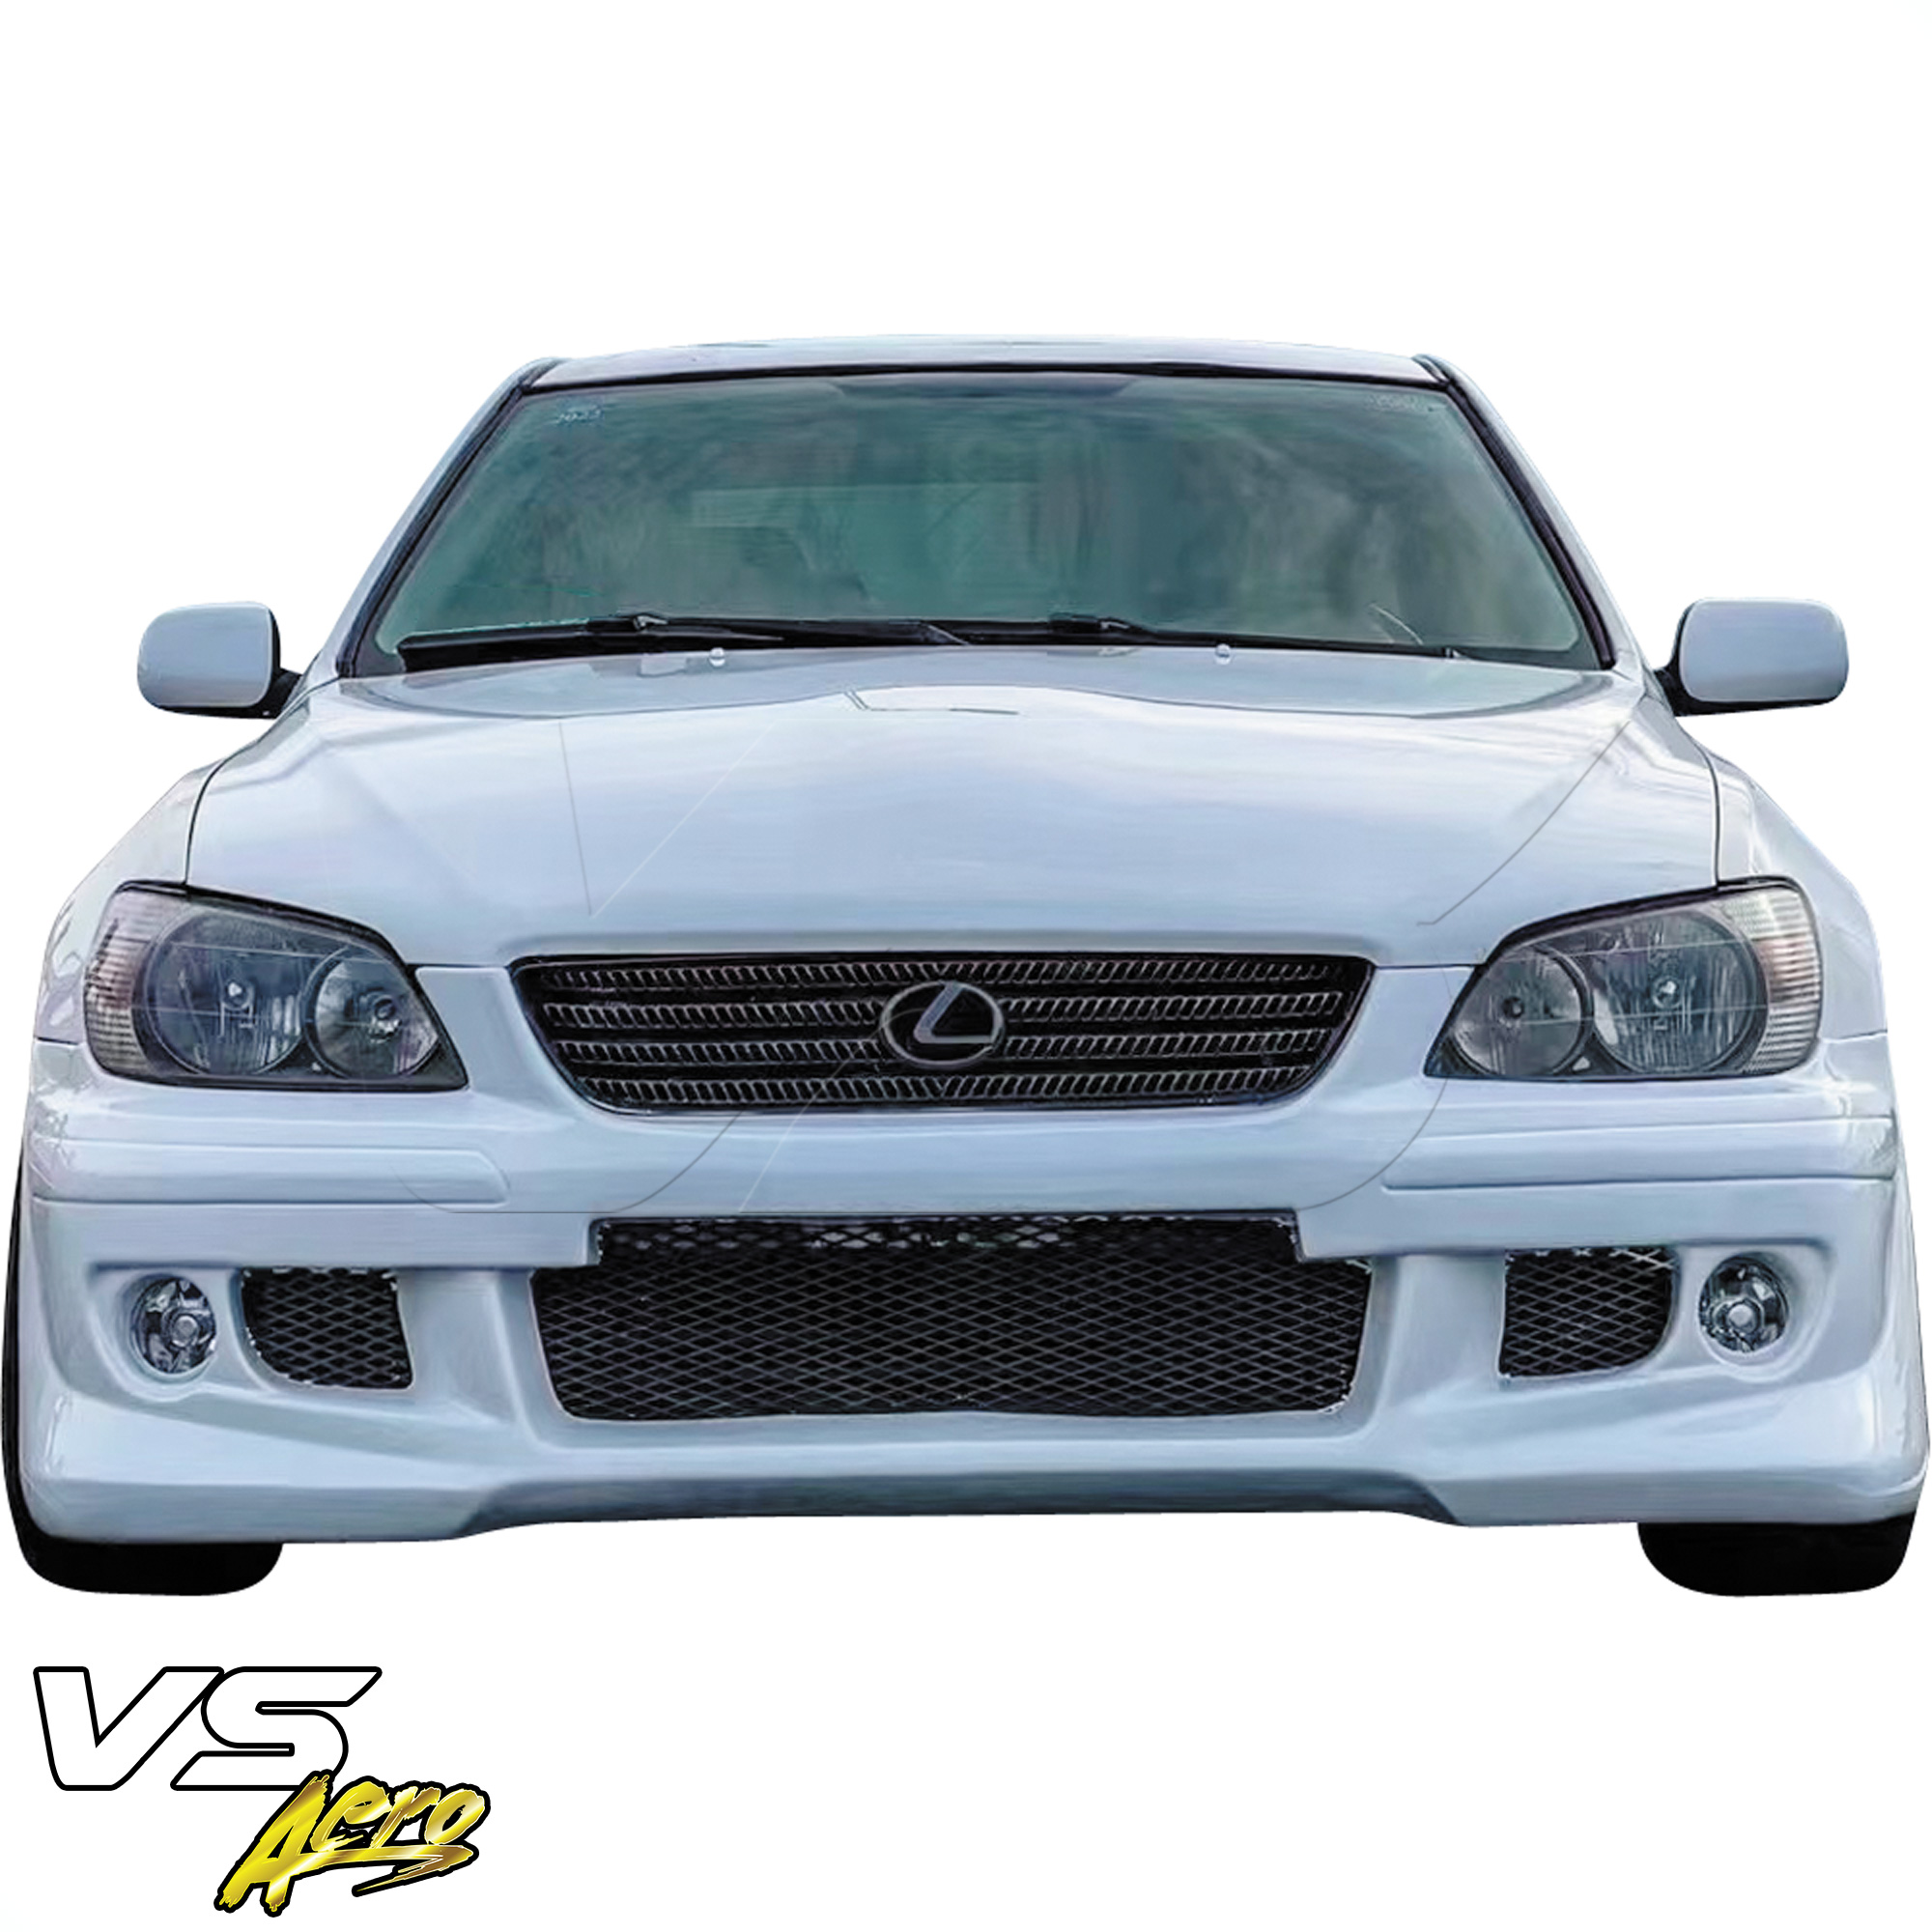 VSaero FRP HKES Front Bumper > Lexus IS300 SXE10 2001-2005 - Image 19